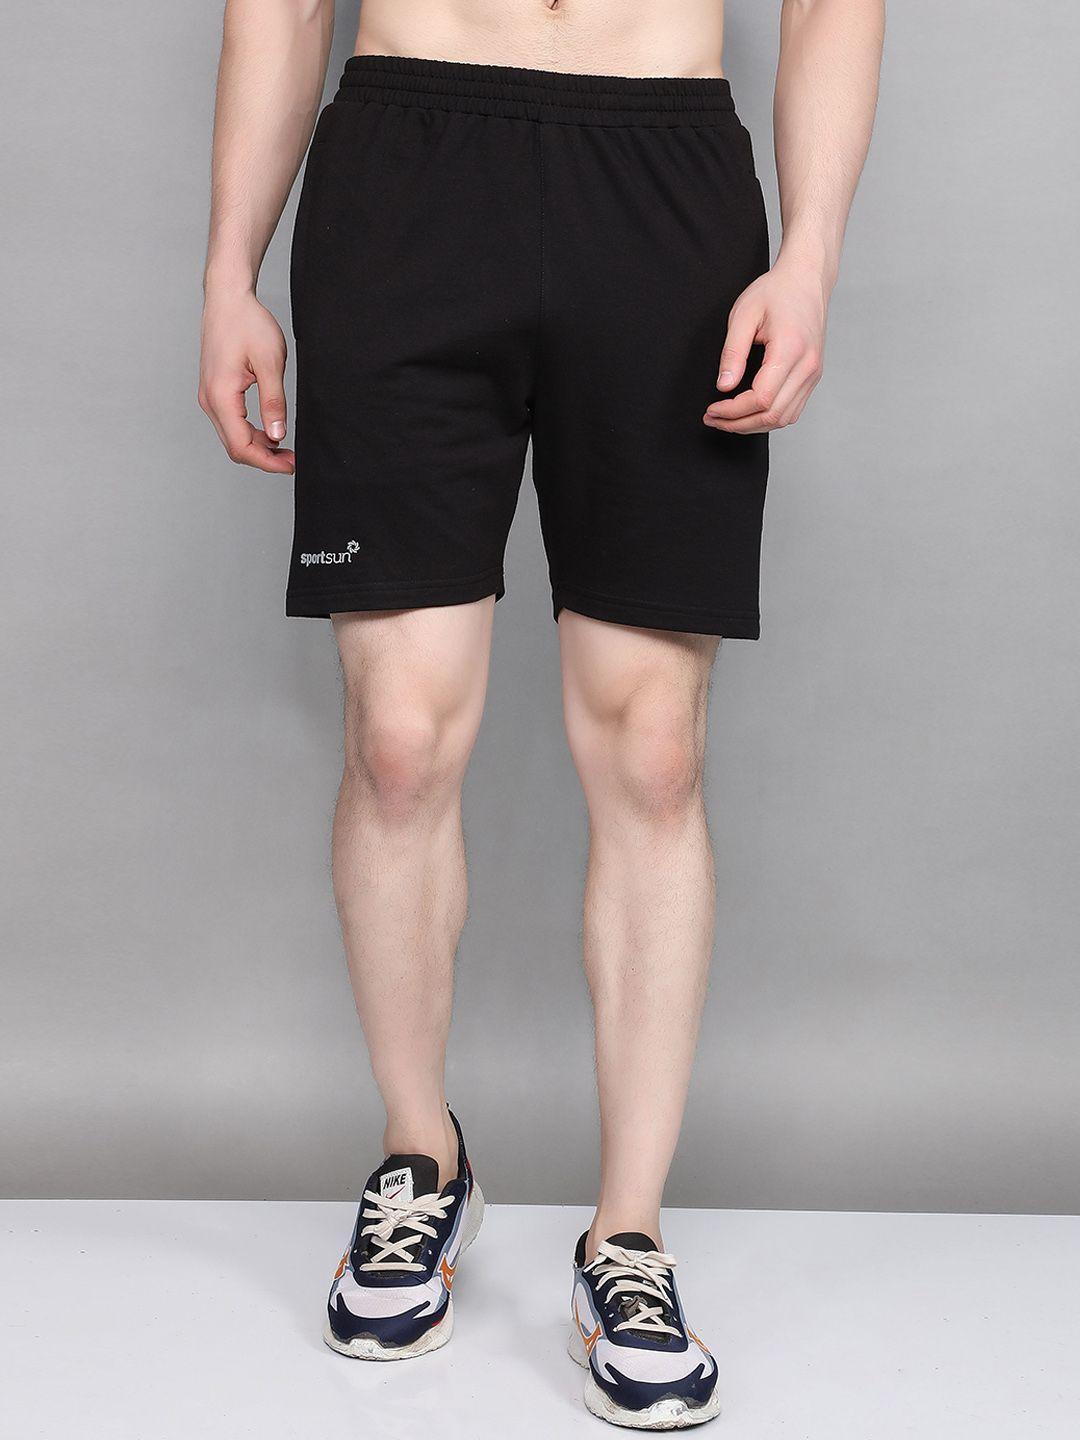 sport-sun-men-outdoor-shorts